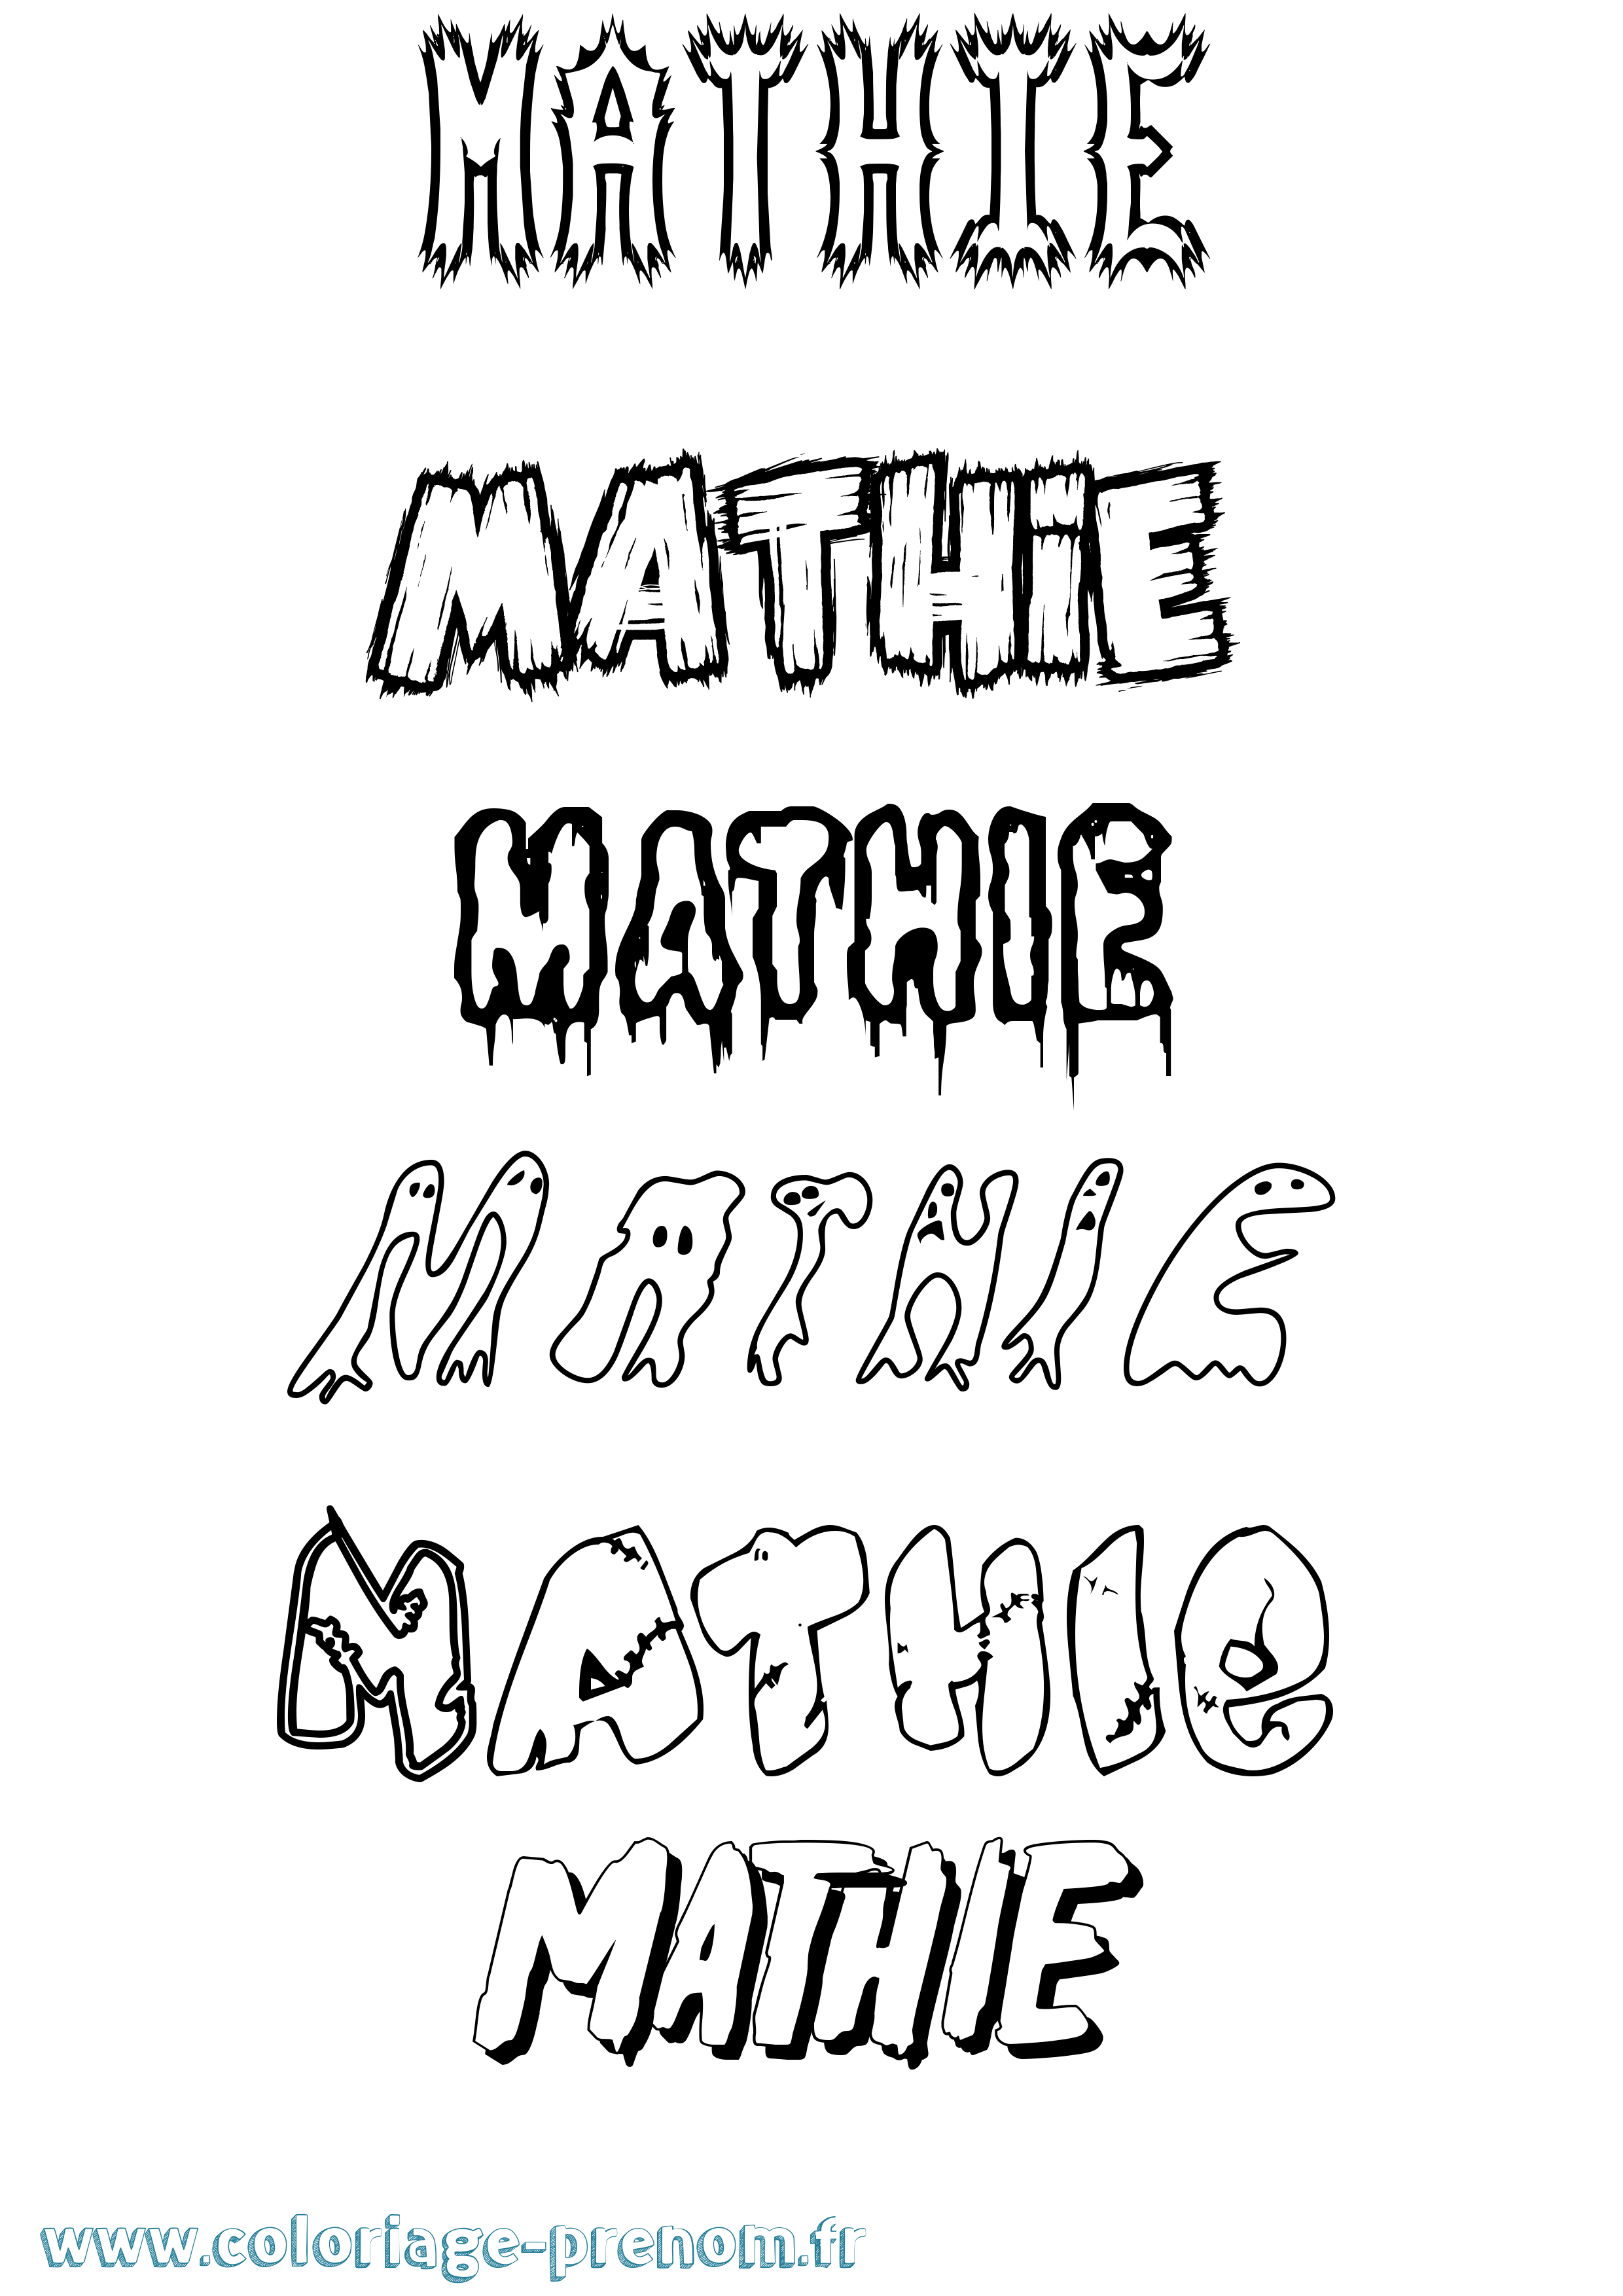 Coloriage prénom Mathie Frisson